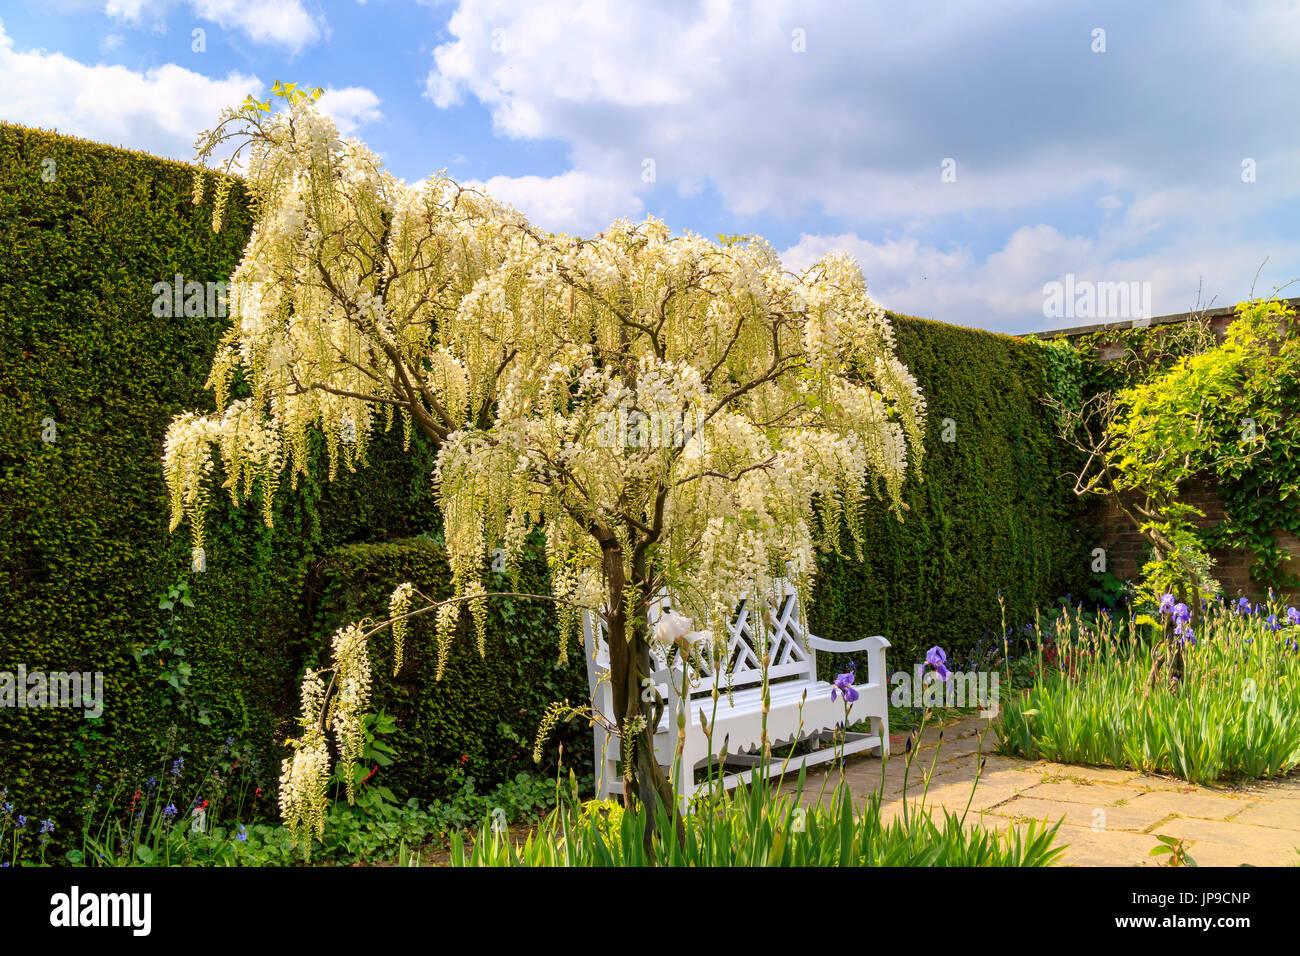 Floraison blanche wisteria Alba arbustes grimpeur entrelacés de plus en plus, comme un arbre dans un jardin. Banque D'Images